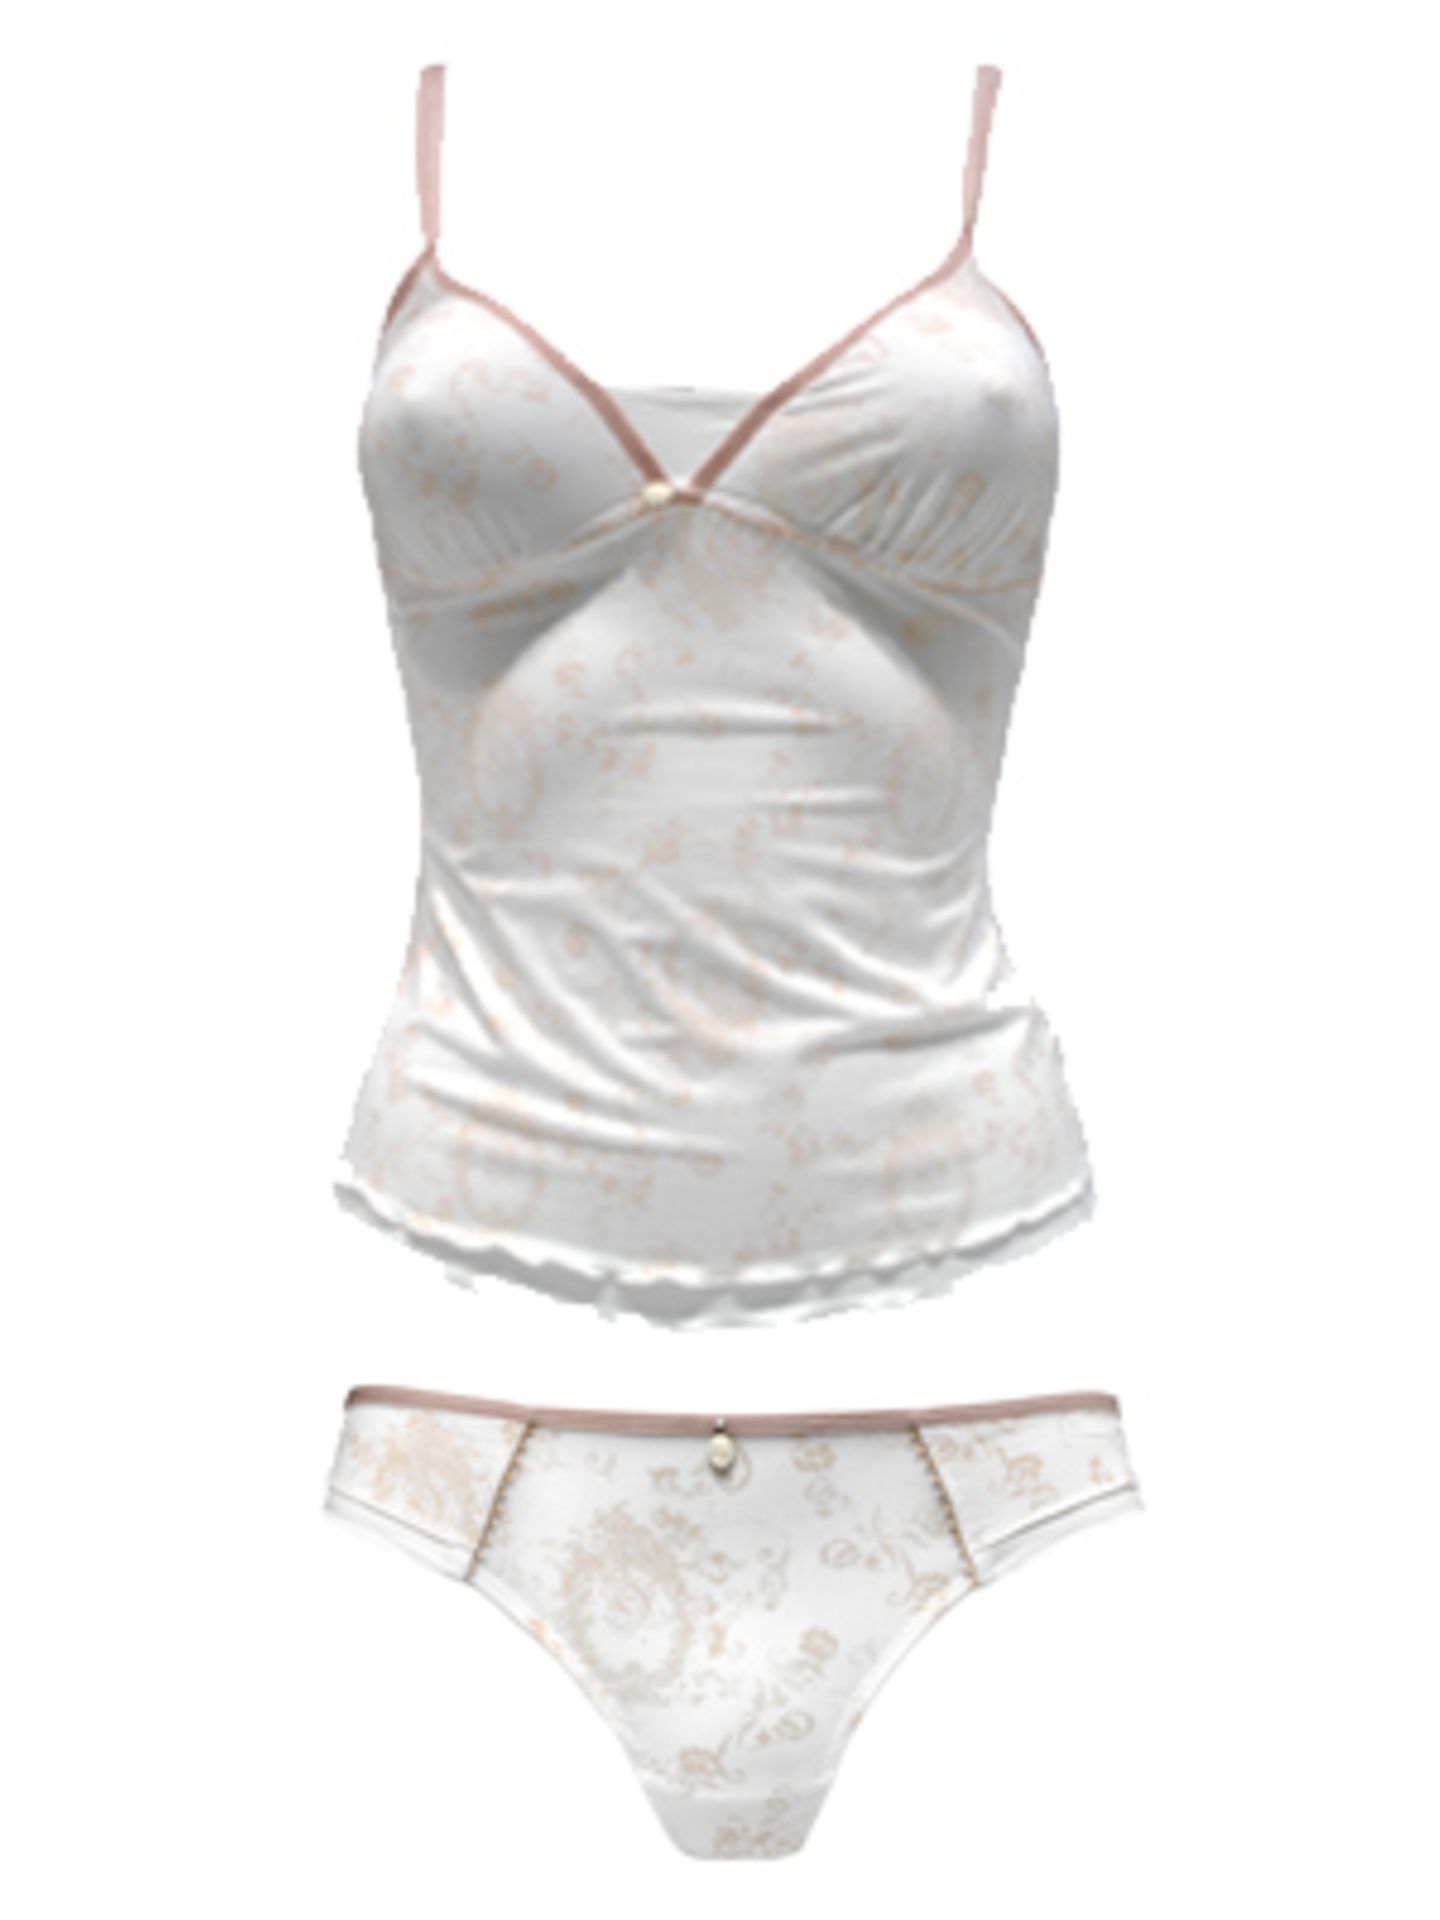 Hemdchen und Slip in weiß mit Retro-Audruck und Detail in zartem Altrosa von Esprit. Top um 22,95 Euro, Slip ca. 12,95 Euro.